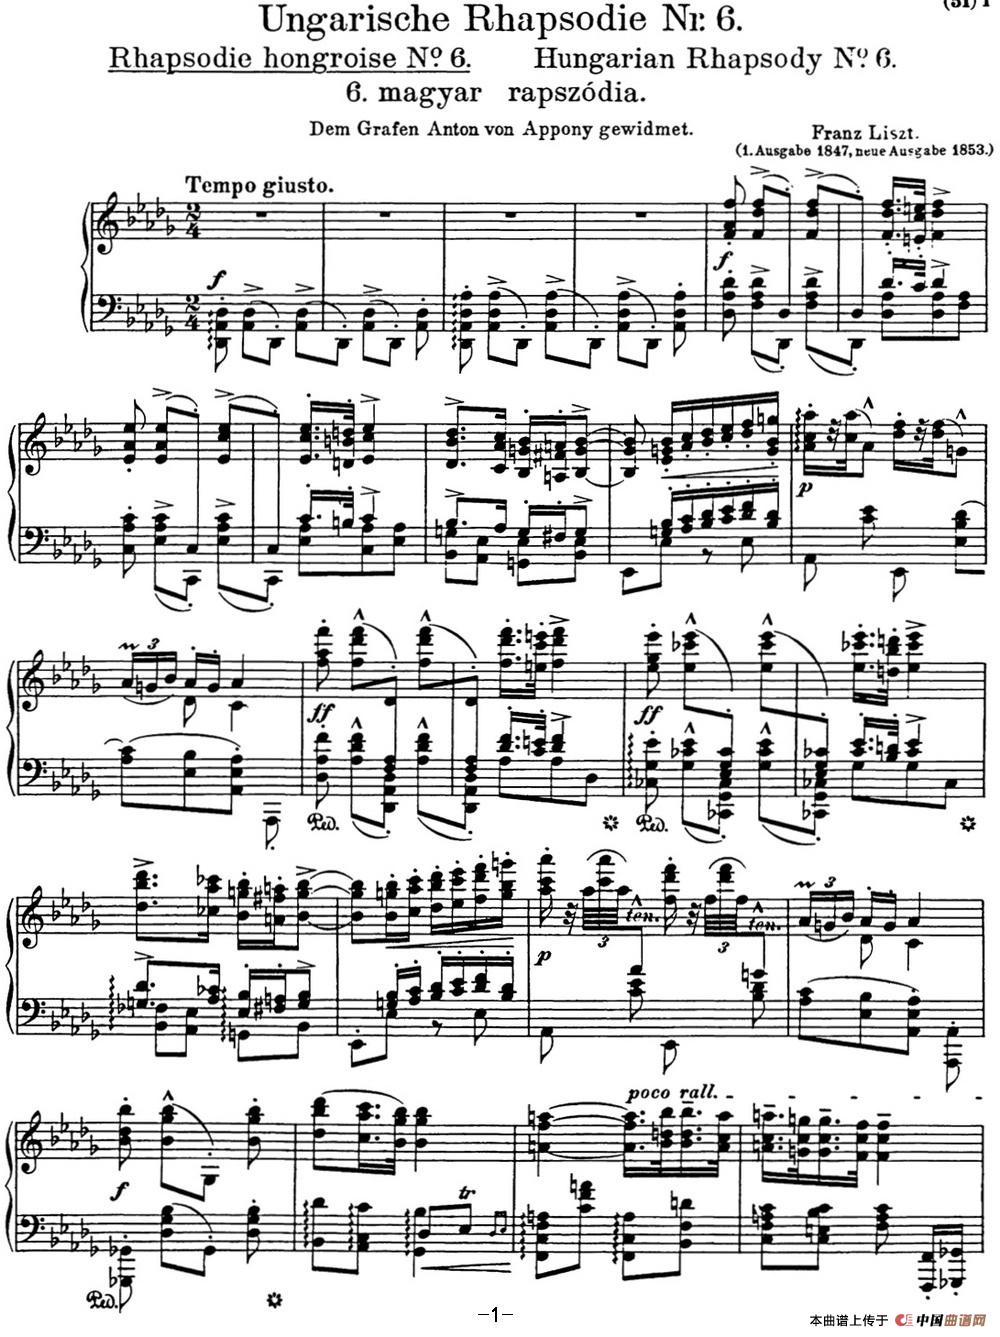 《李斯特 匈牙利狂想曲 Hungarian Rhapsodies S.244 No.6》钢琴曲谱图分享